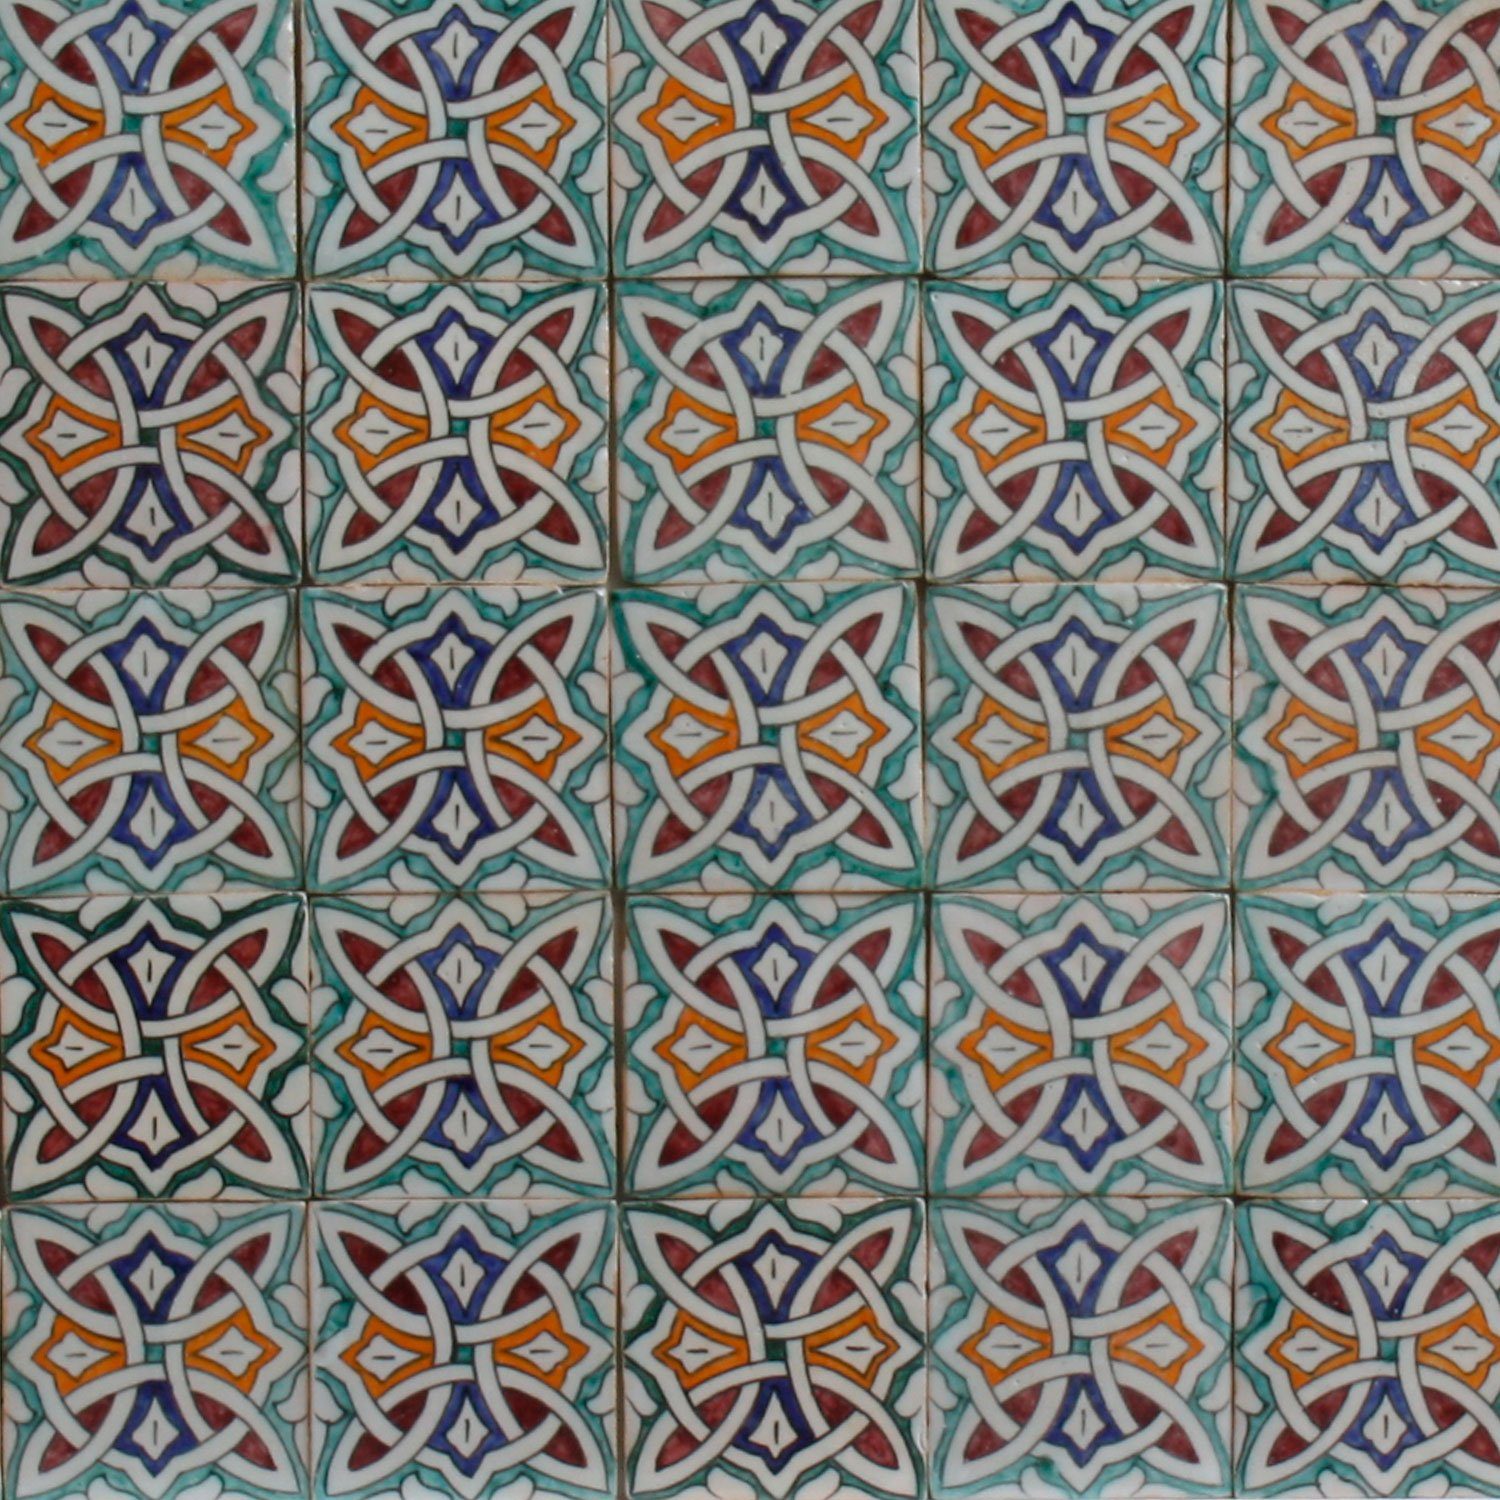 Kunsthandwerk Casa Casa x Keramikfliese Küche Dusche Marokkanische Badezimmer Moro für schöne Mehrfarbig, cm, 10 Wandfliese Moro Wandfliese Layla, Keramik Marokko, 10 handbemalte aus